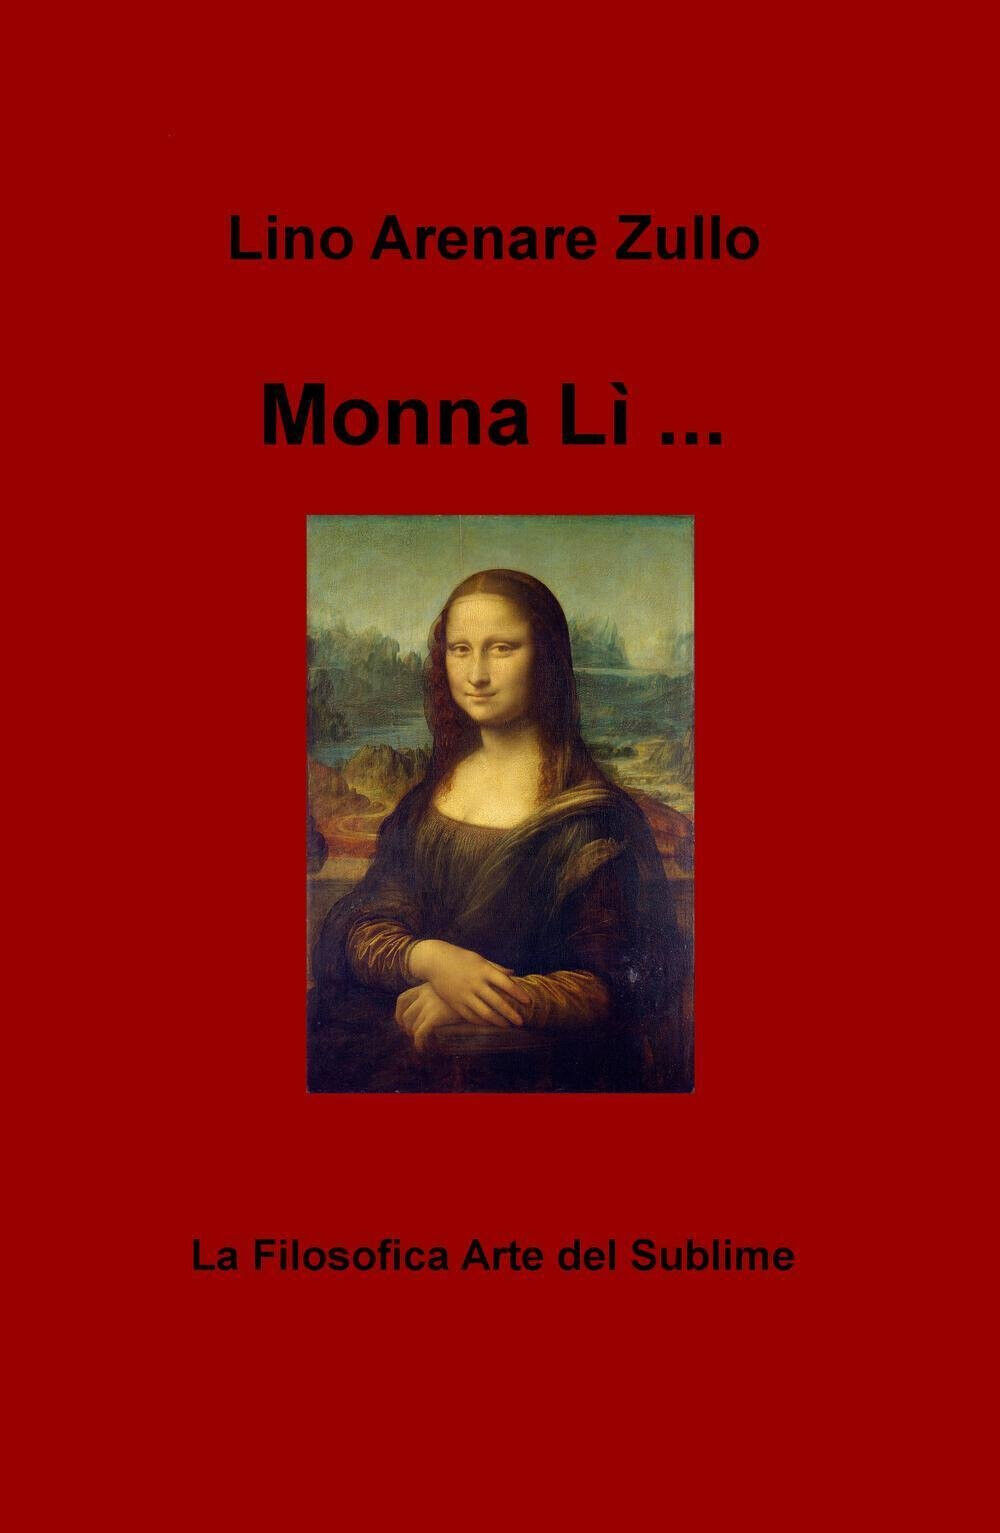 Monna Li... La filosofica arte del sublime - Zullo - Ilmiolibro, 2016 libro usato